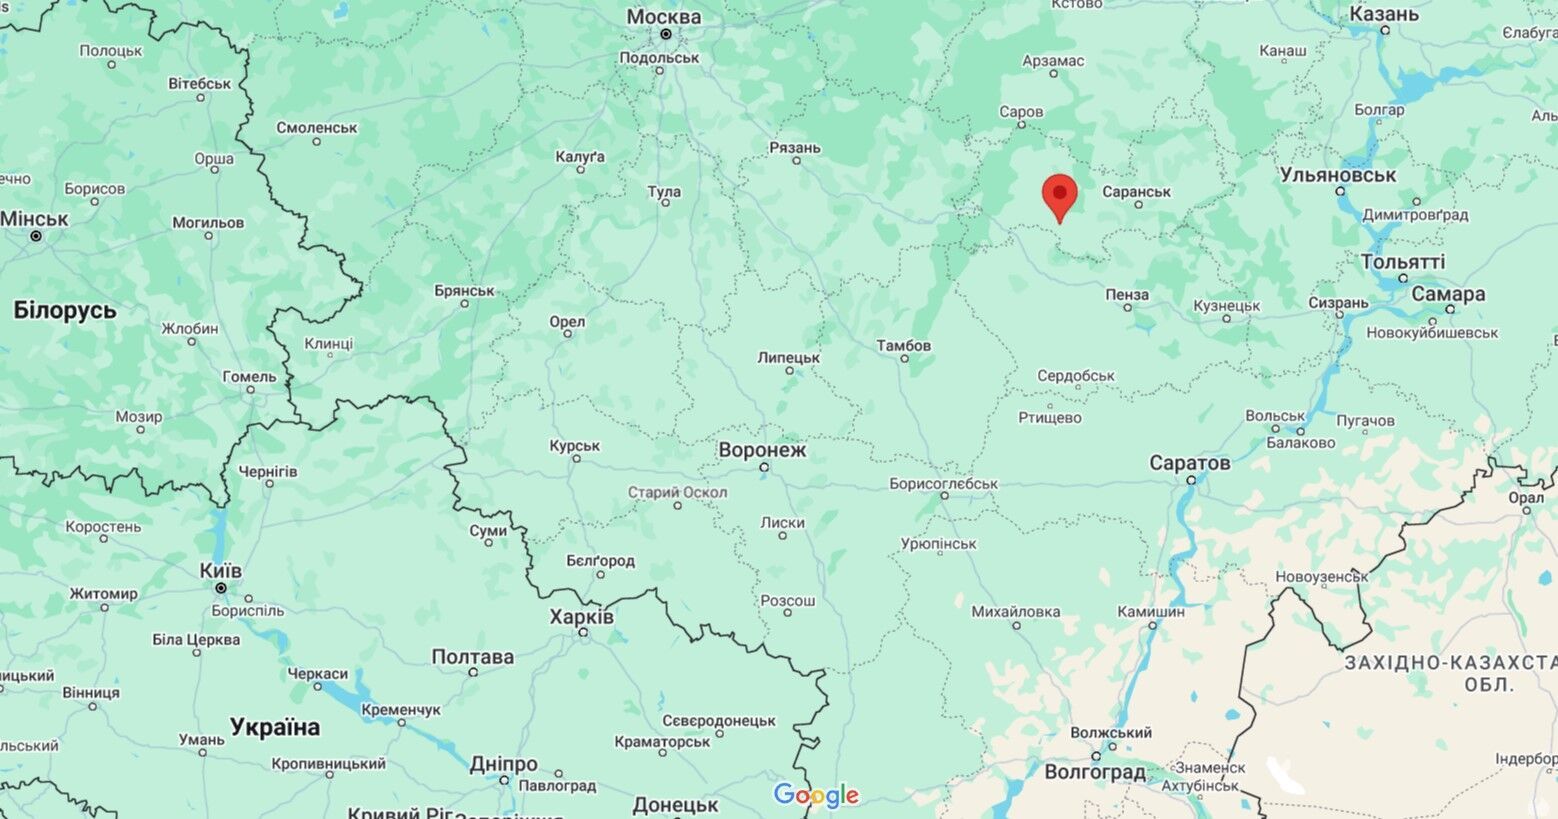 Українські БПЛА атакували військову частину в Мордовії, де розміщено РЛС "Контейнер"
